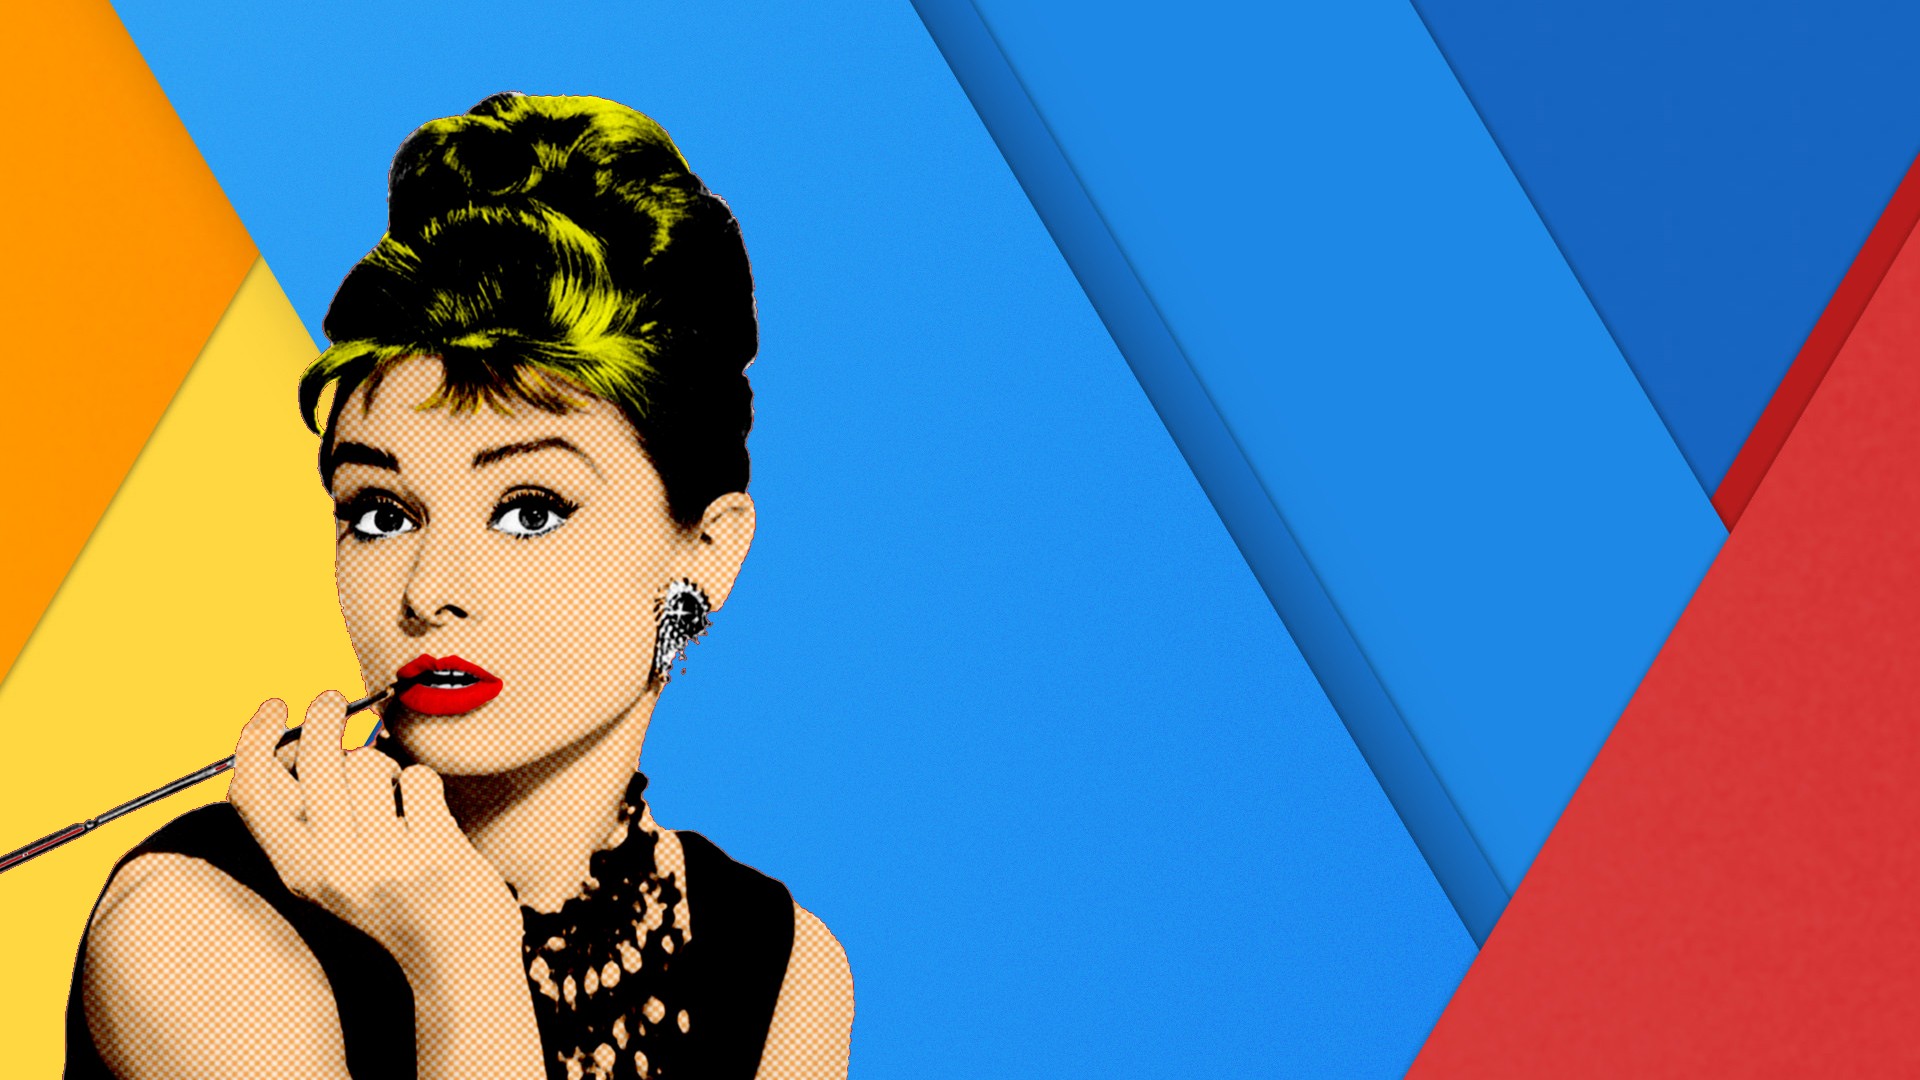 women, Audrey Hepburn, Pop art, Flatdesign, Artwork, Yellow, Blue, Red Wallpaper